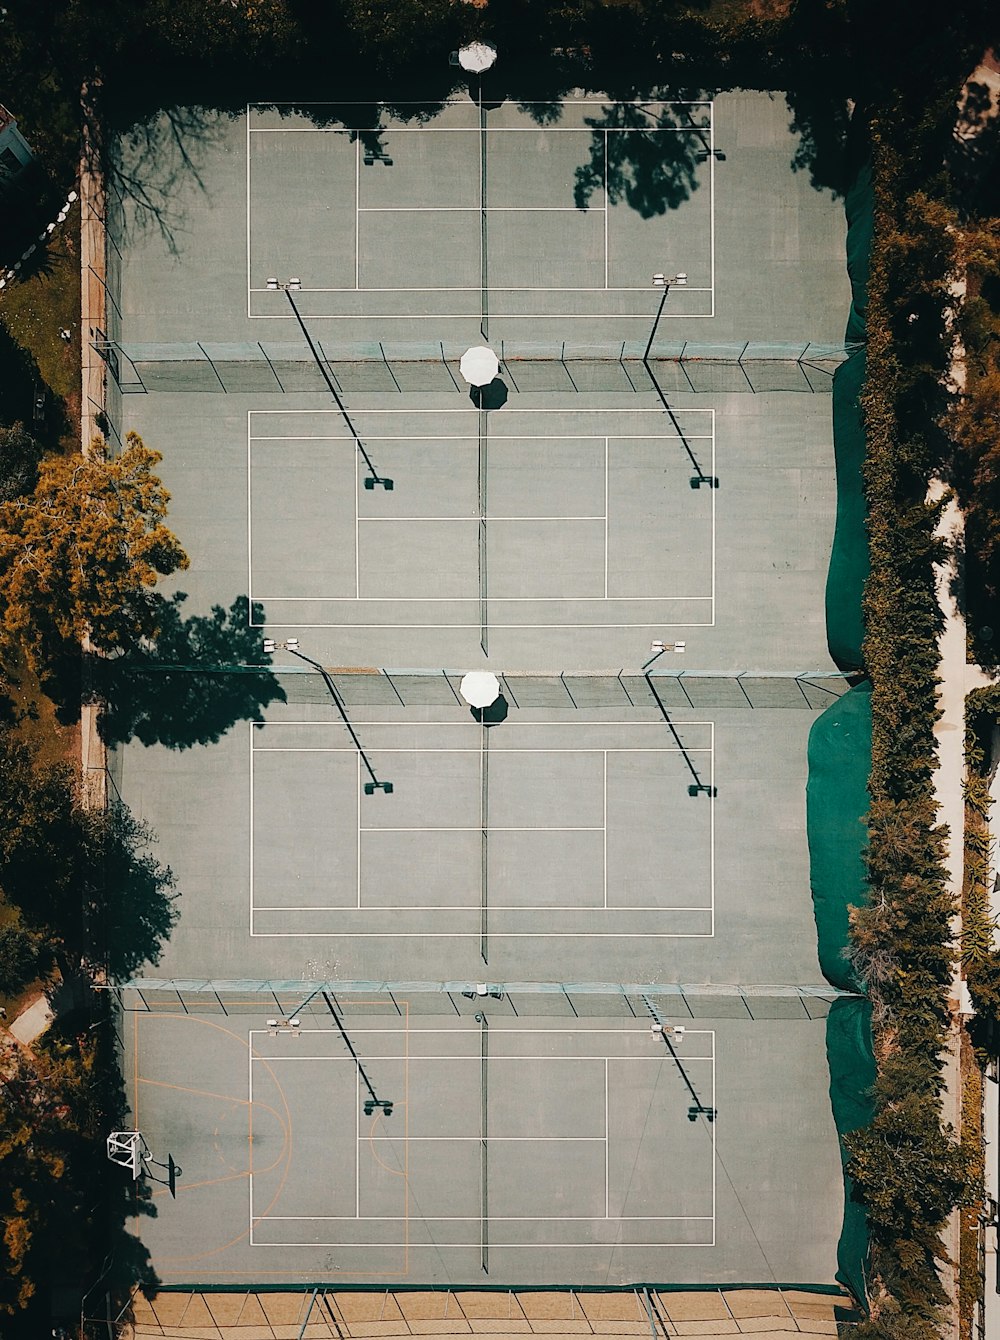 Fotografía aérea del campo de juego rodeado de naranjos